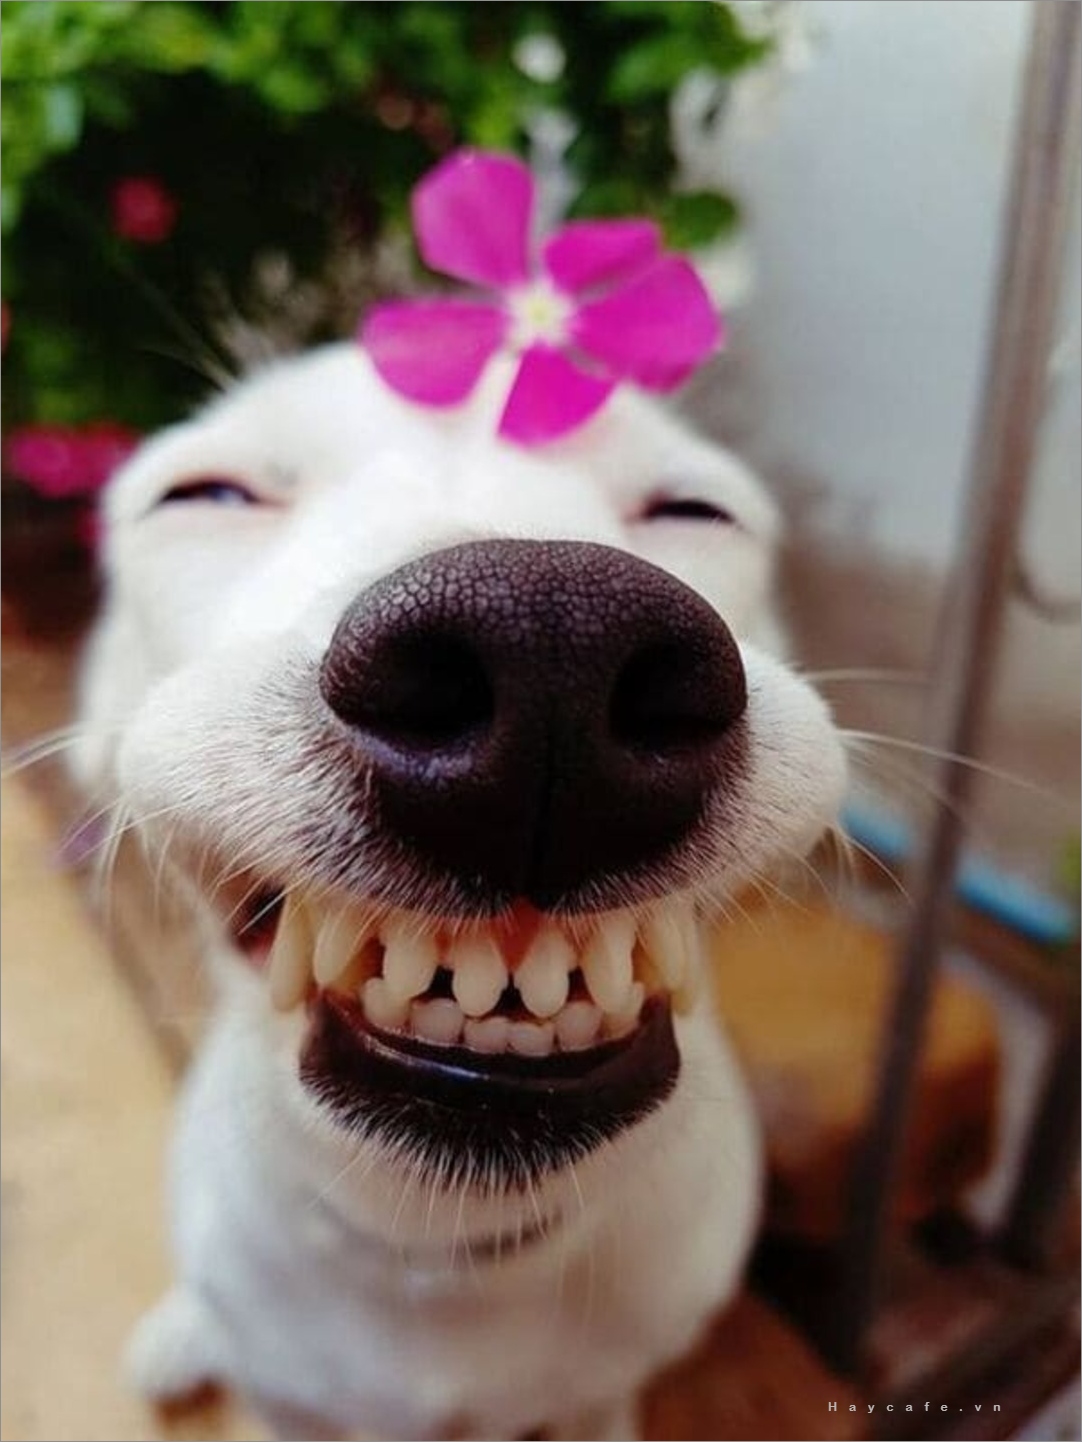 Nếu bạn muốn cười đau bụng, hãy xem hình ảnh chó hài hước của chúng tôi. Từ những tình huống ngộ nghĩnh cho đến cái nhìn đưa ra, bạn sẽ có được một trận cười tươi sáng.